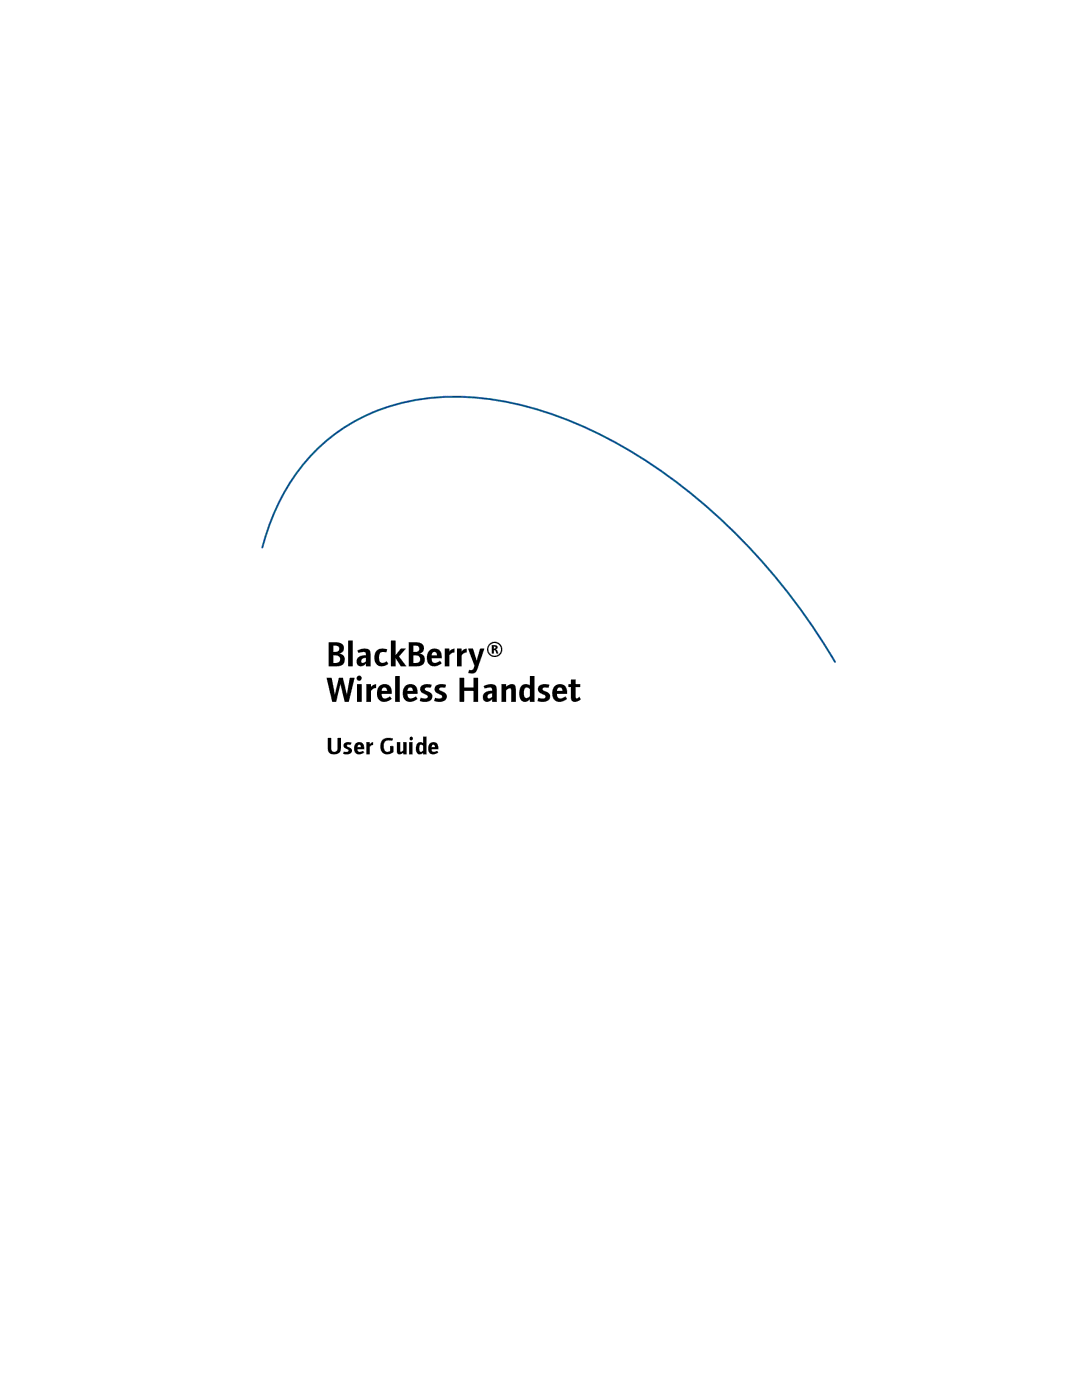 Blackberry manual BlackBerry Wireless Handset, User Guide 